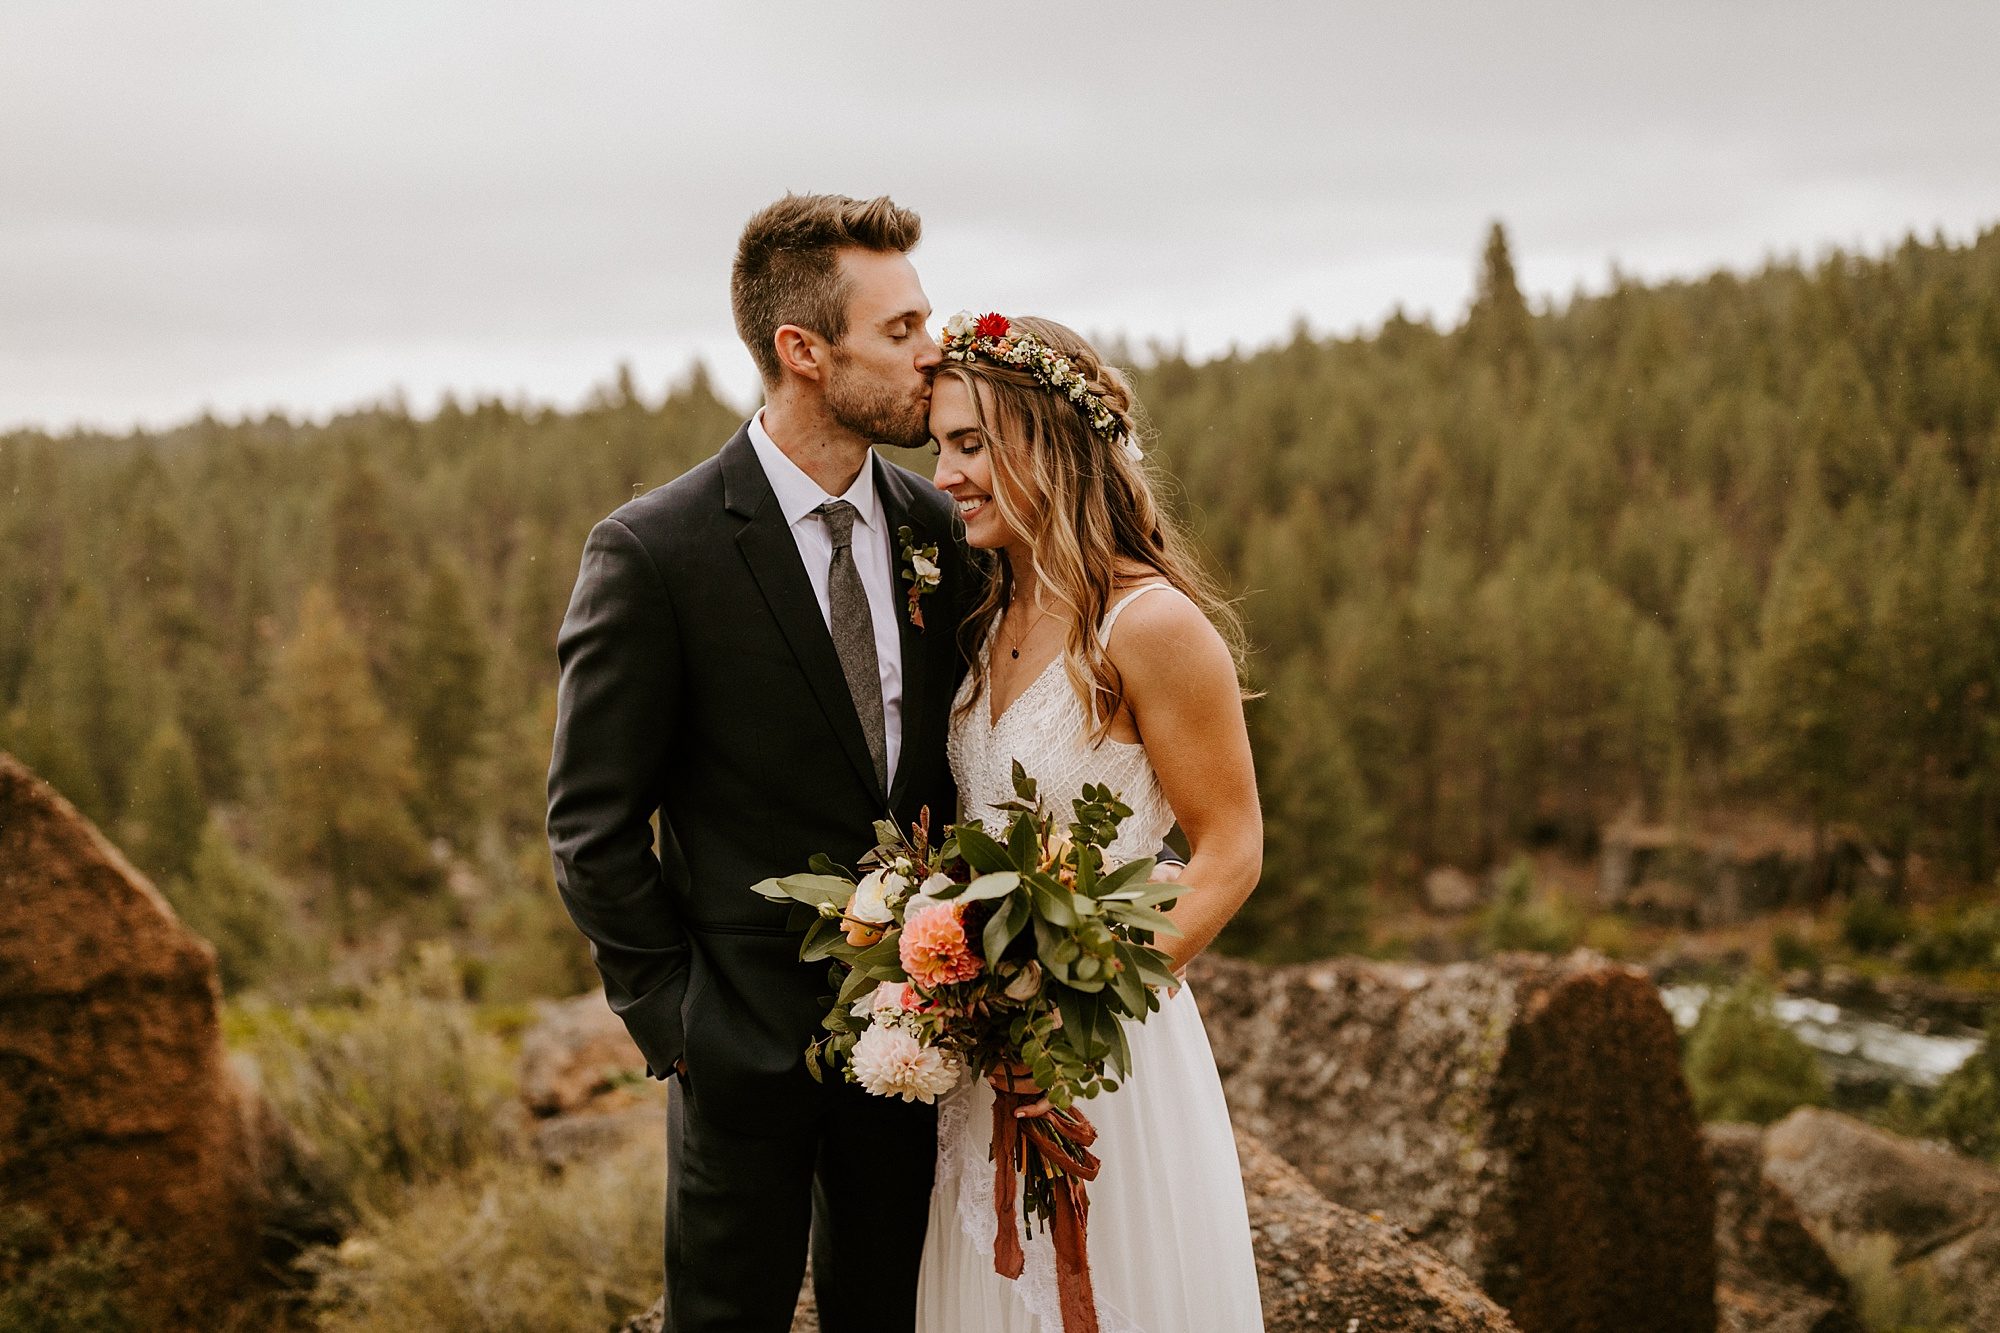 Bend Oregon Mt Bachelor Village Wedding Reception